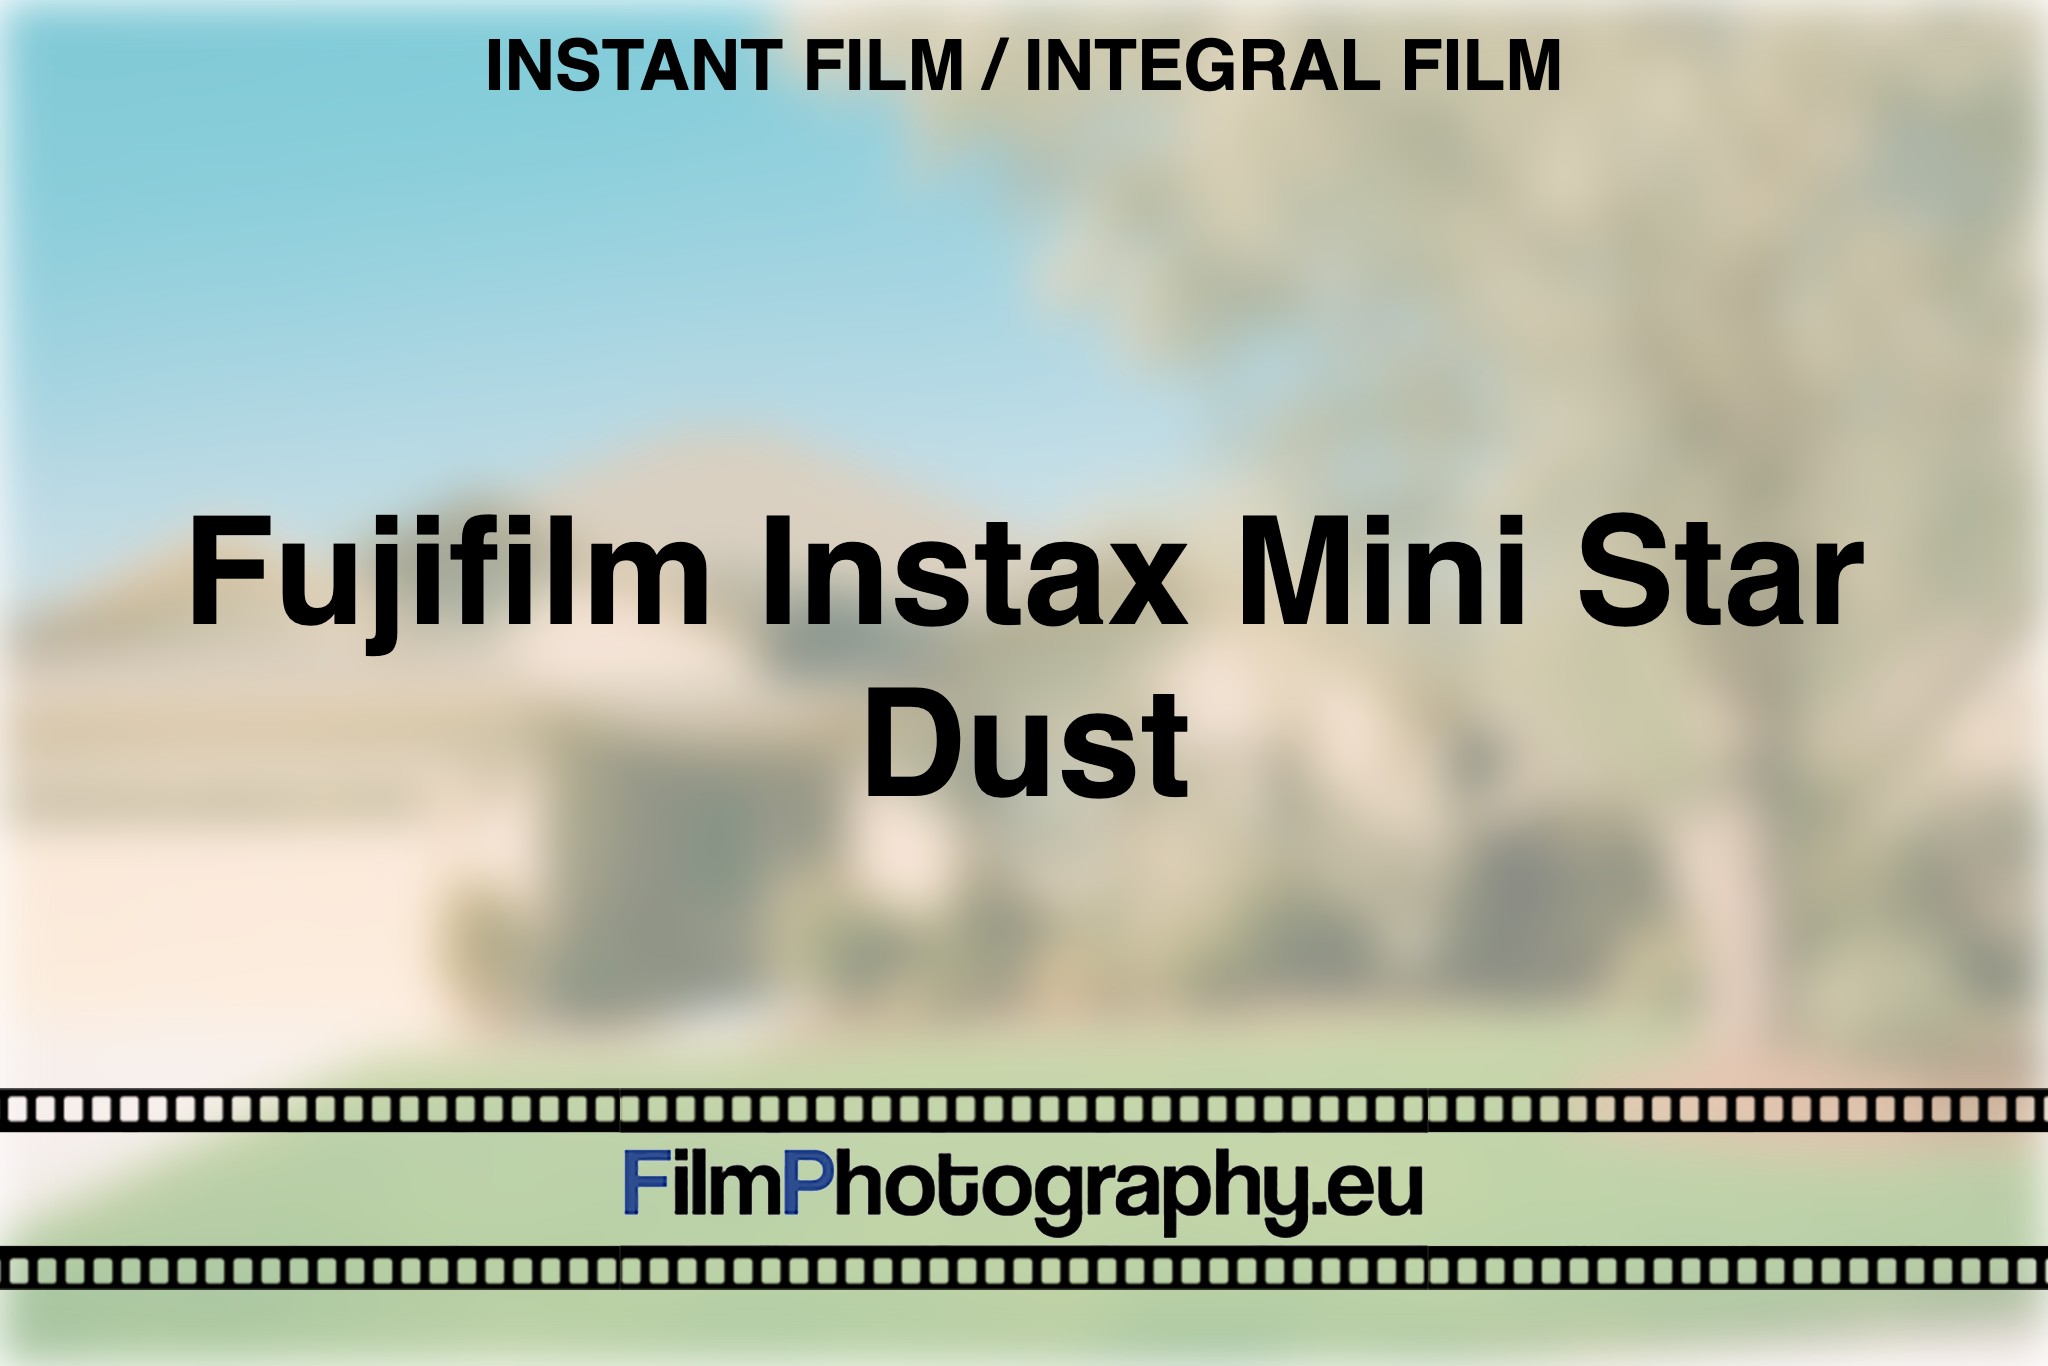 fujifilm-instax-mini-star-dust-instant-film-integral-film-bnv